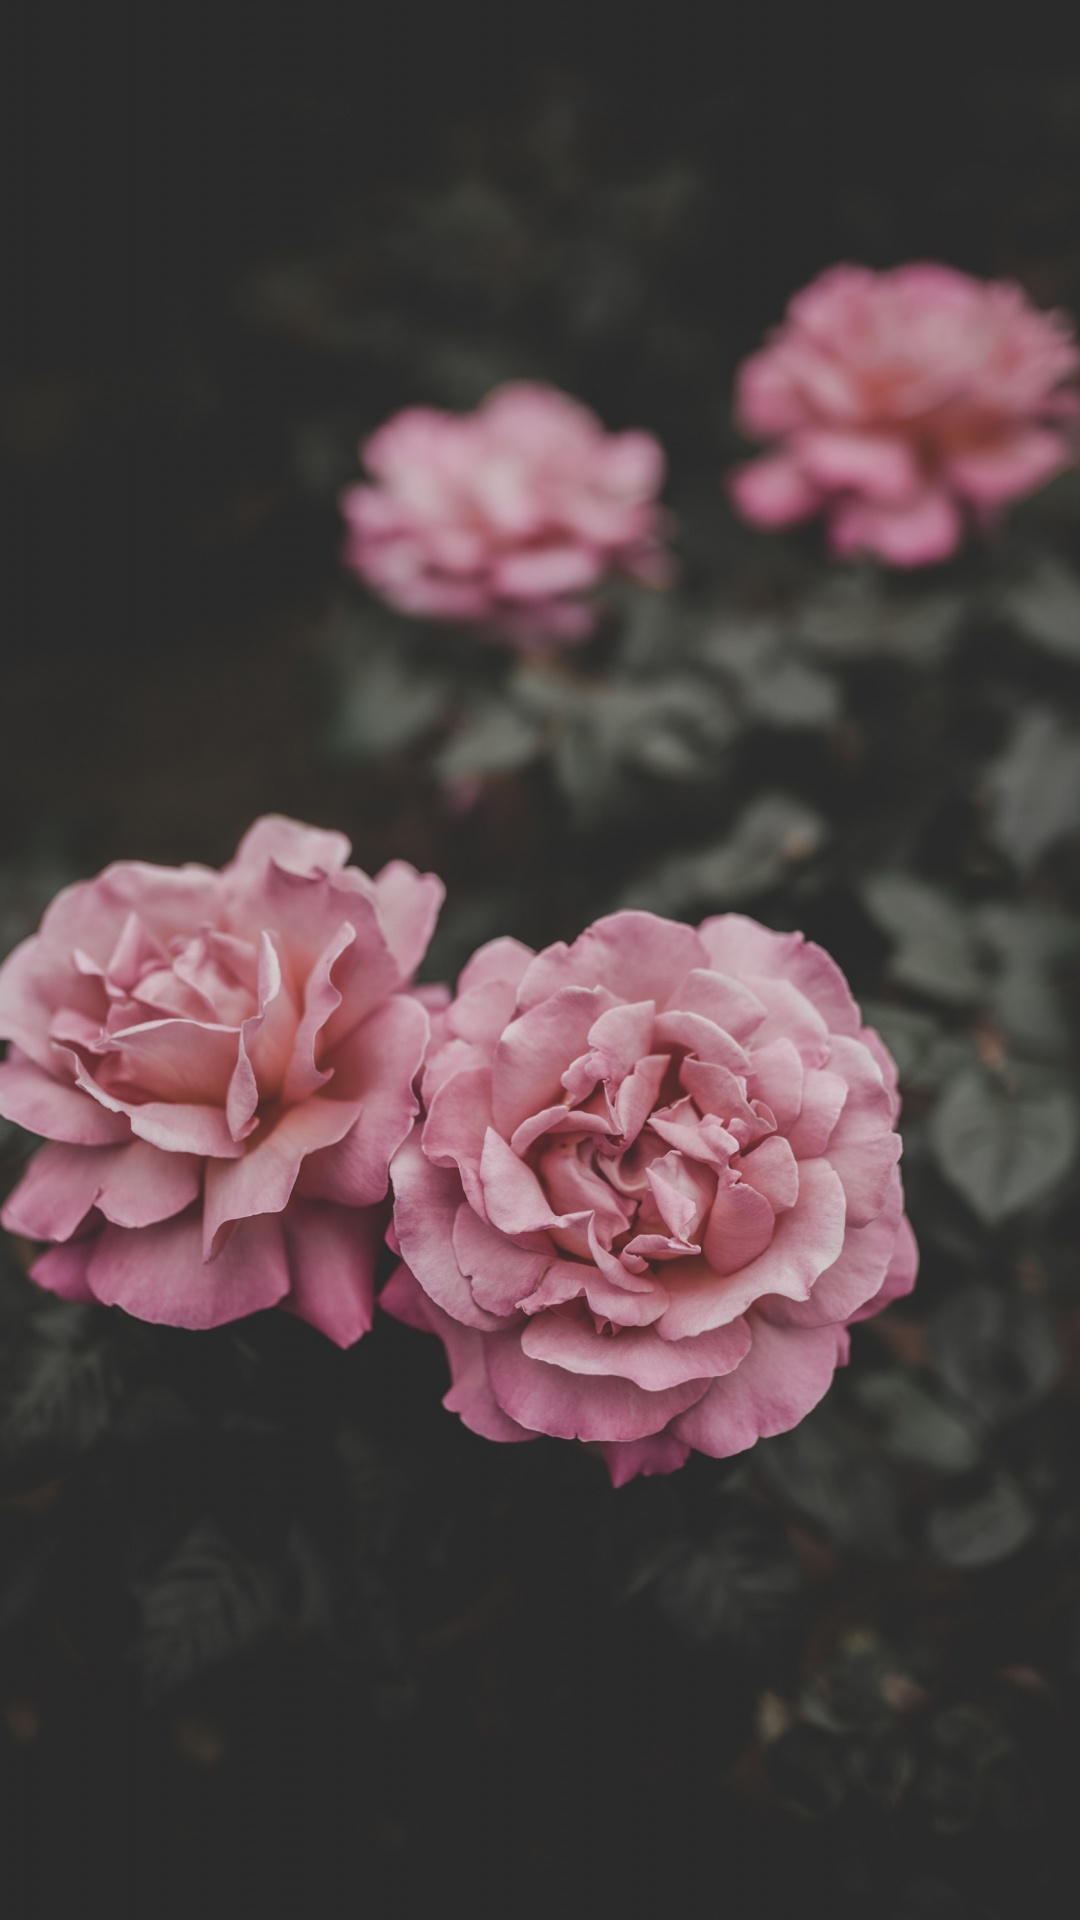 Fleur Rose Dans L'objectif à Basculement. Wallpaper in 1080x1920 Resolution